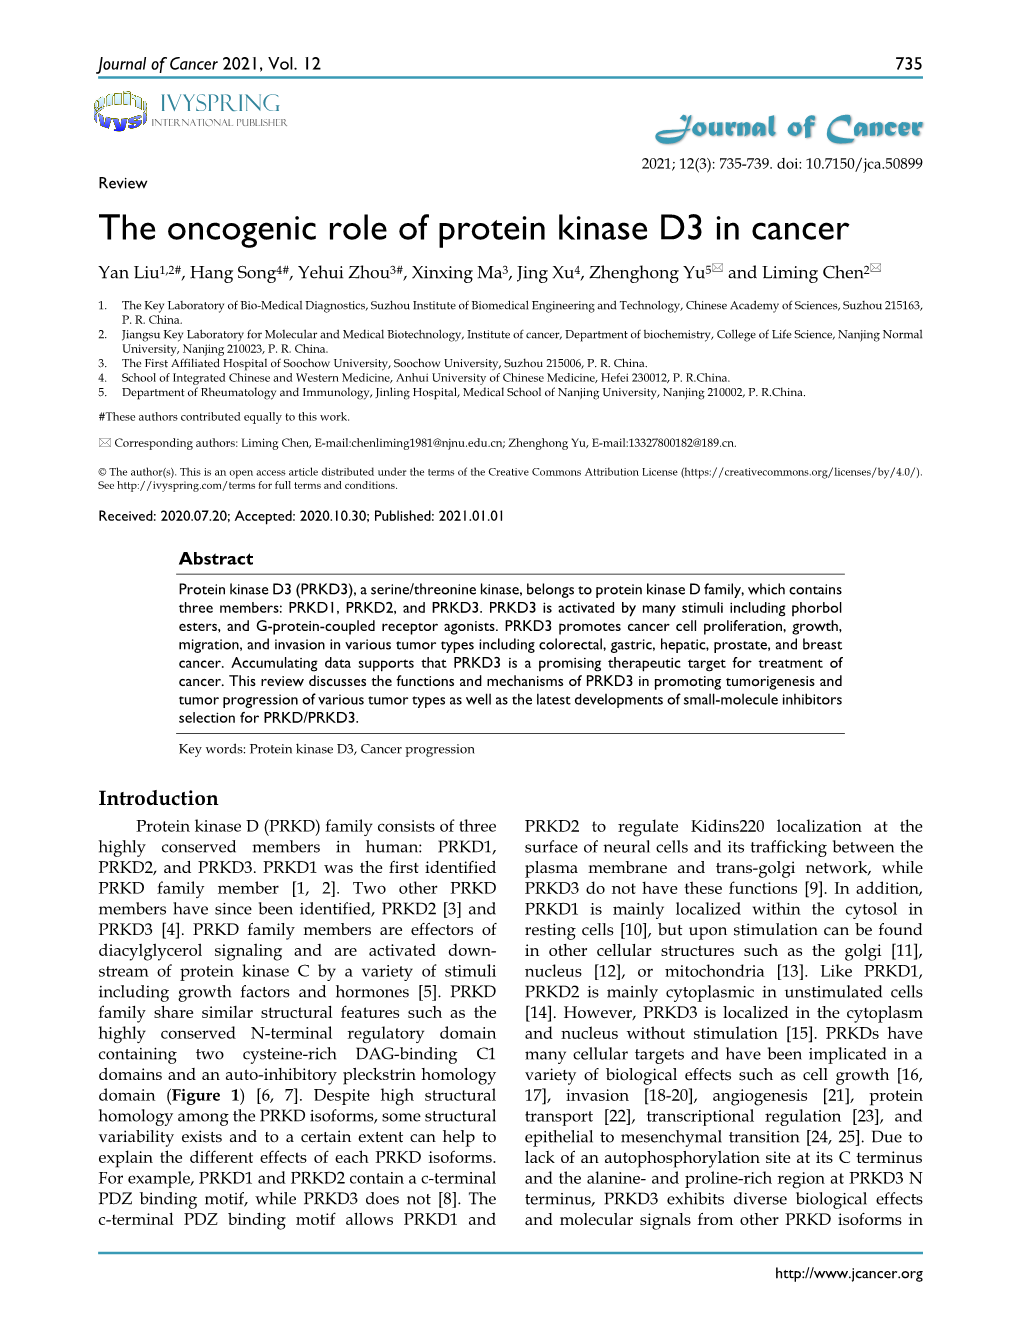 The Oncogenic Role of Protein Kinase D3 in Cancer Yan Liu1,2#, Hang Song4#, Yehui Zhou3#, Xinxing Ma3, Jing Xu4, Zhenghong Yu5 and Liming Chen2